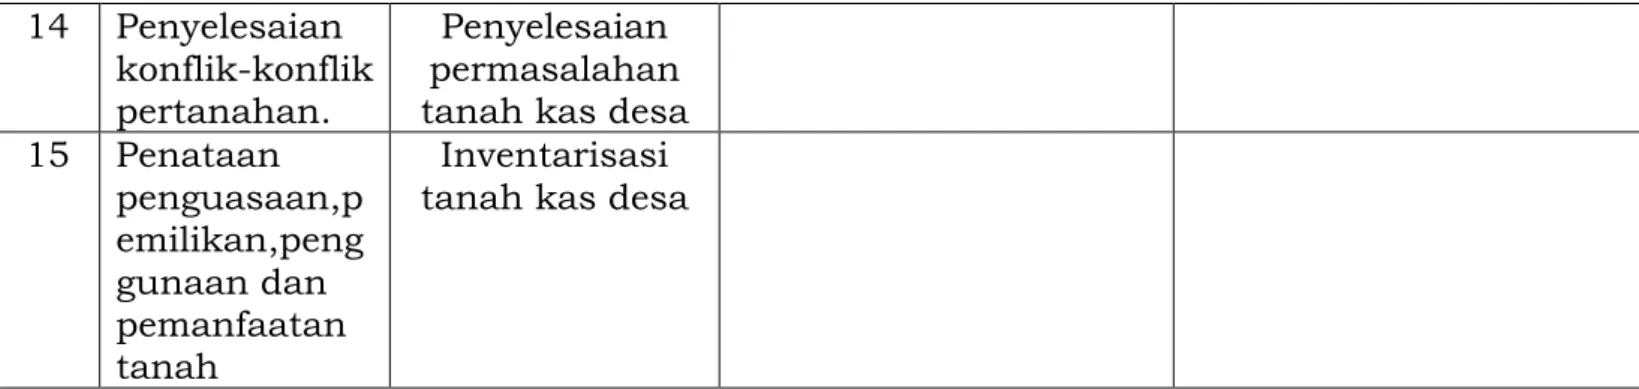 Tabel 3.2 Telaahan Visi, Misi dan Program Kepala Daerah dan Wakil 